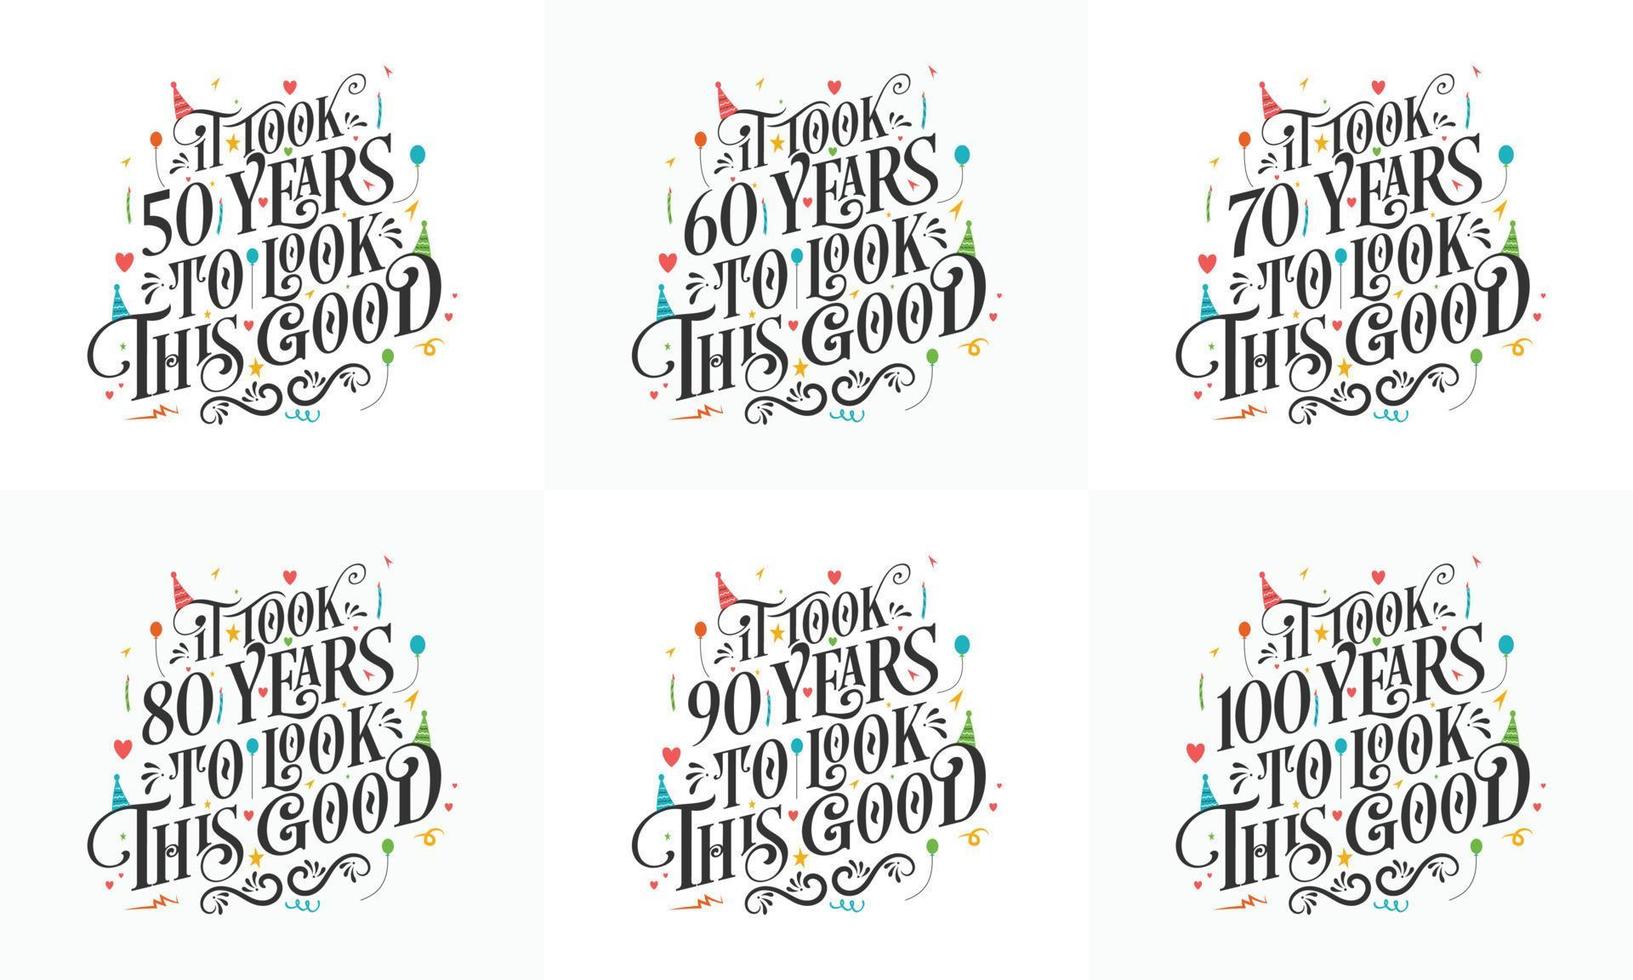 geburtstagsfeier typografie bündel design. Geburtstags-Typografie-Zitat-Design-Set. Es hat 50, 60, 70, 80, 90, 100 Jahre gedauert, um so gut auszusehen vektor